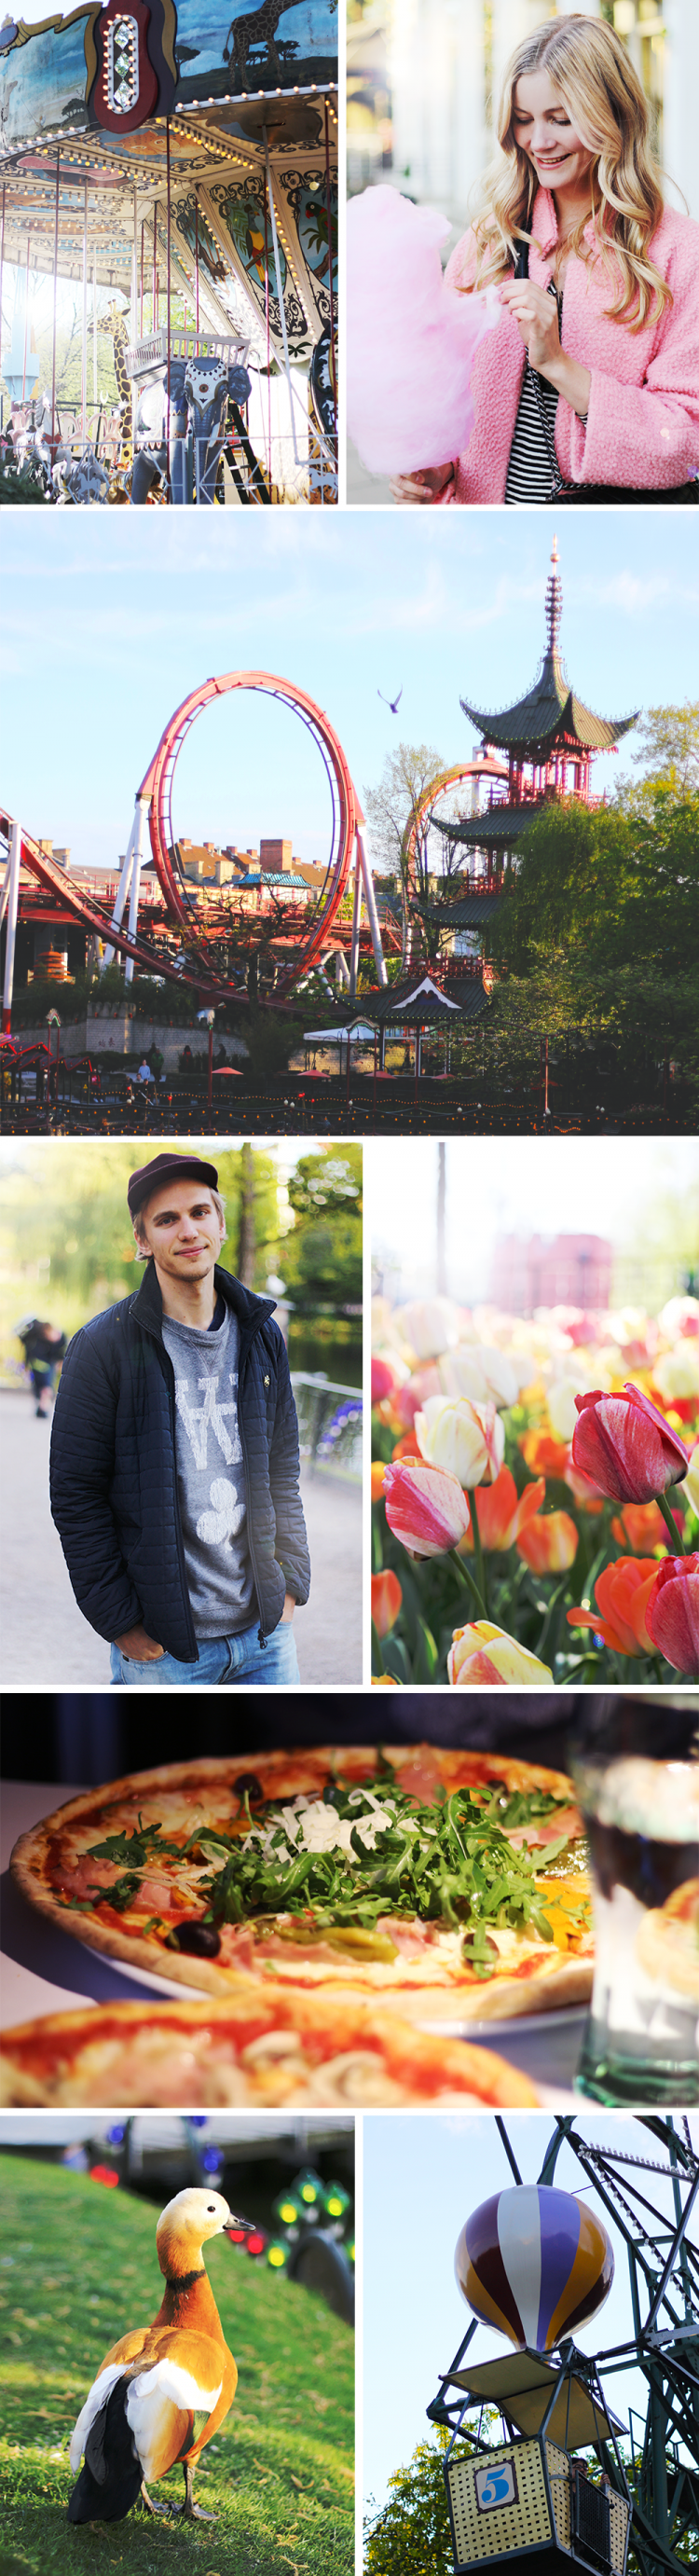 tivoli københavn turist modeblog fashionblog blogger forår springtime spring